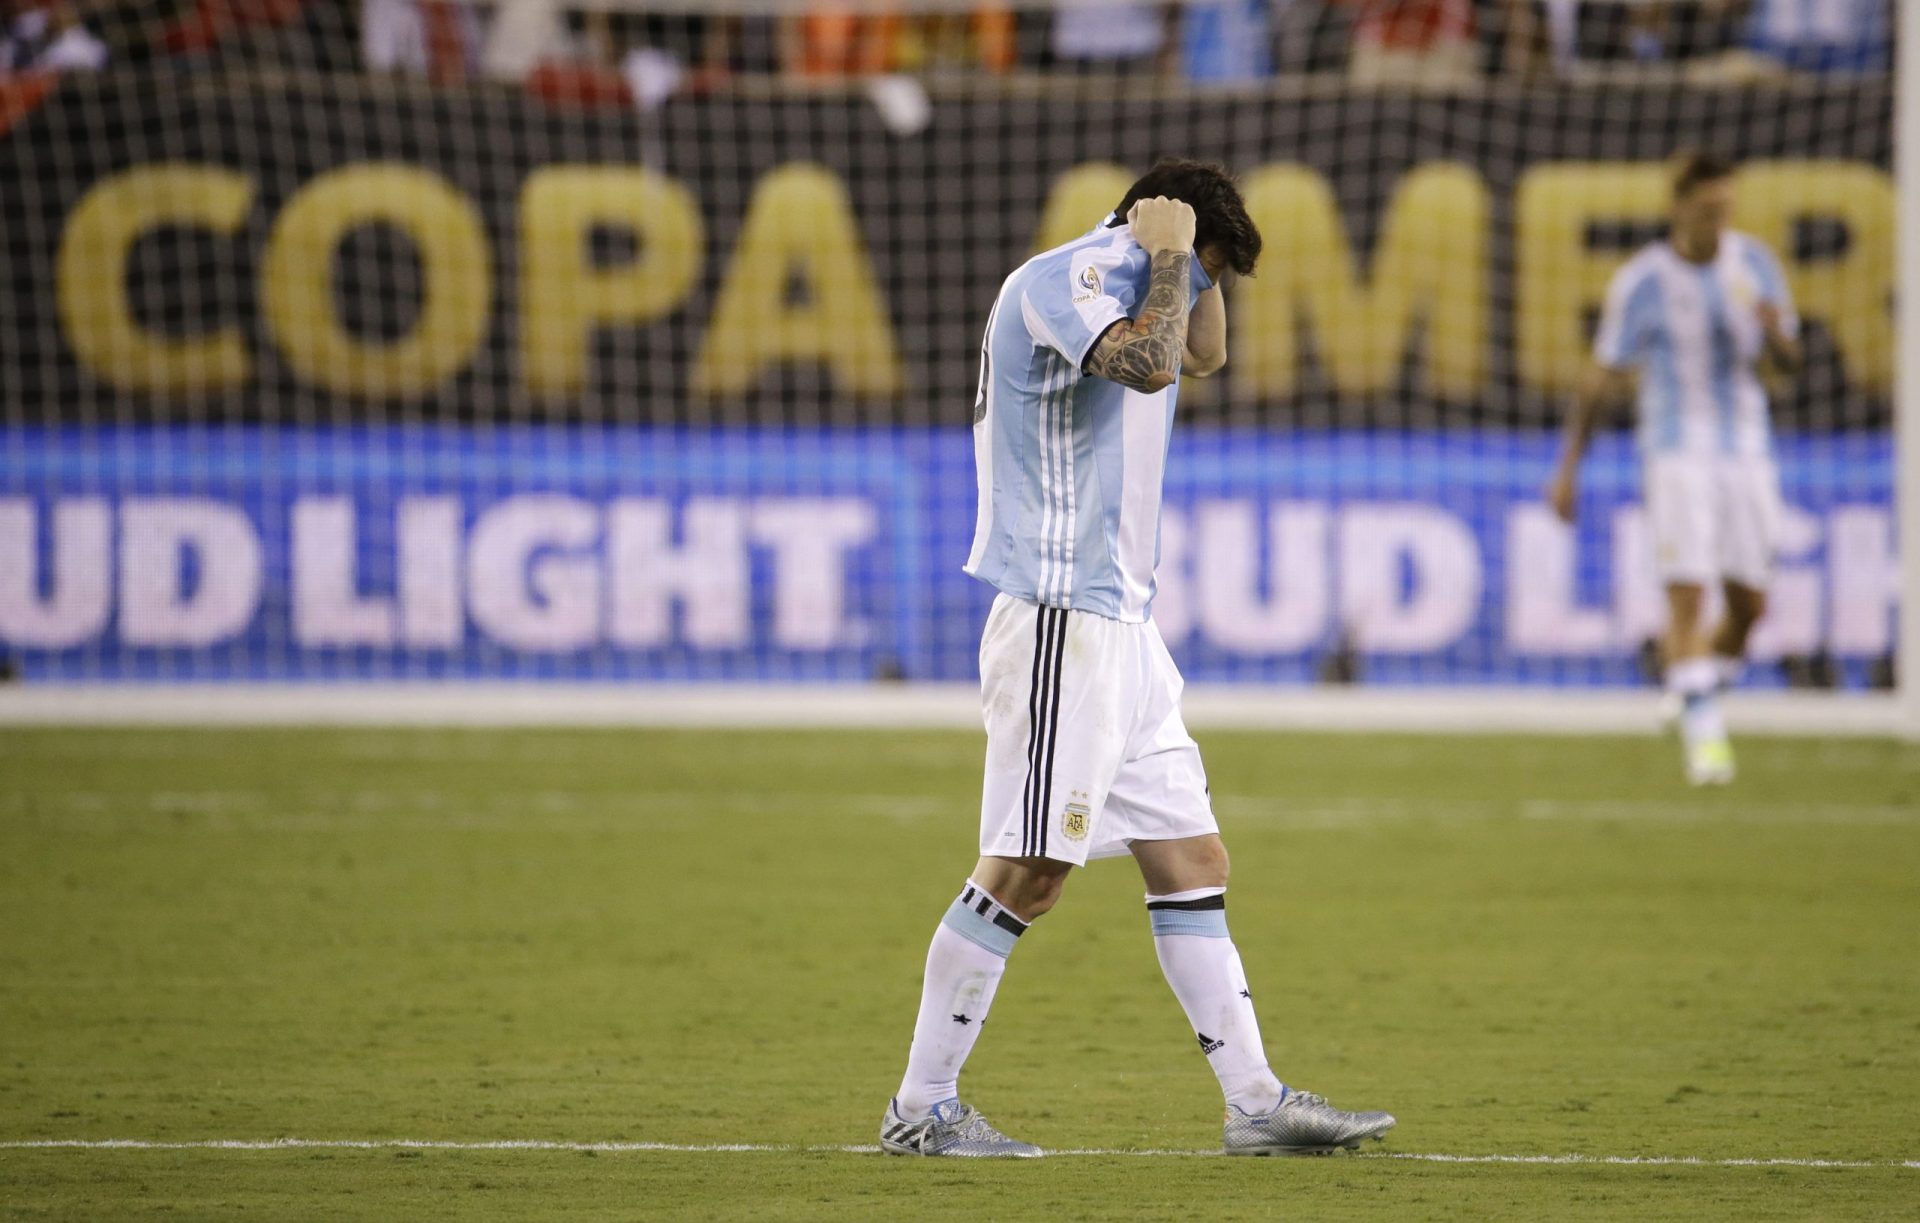 O remate desastroso que precipitou o fim de Messi [vídeo]